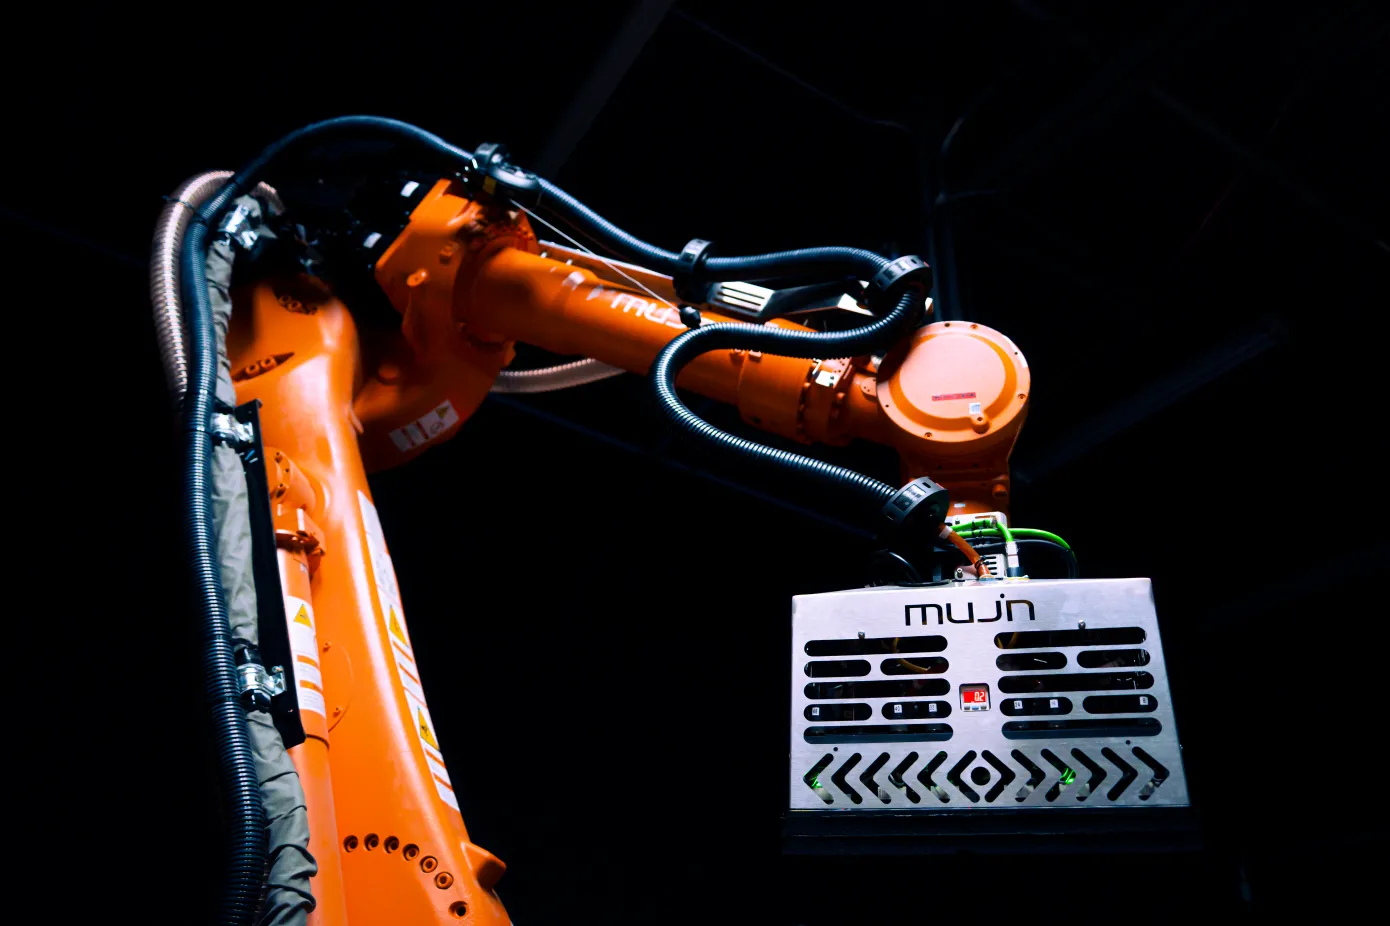 Robotprogramvaruutvecklaren Mujin har tagit in 85 miljoner USD i finansiering